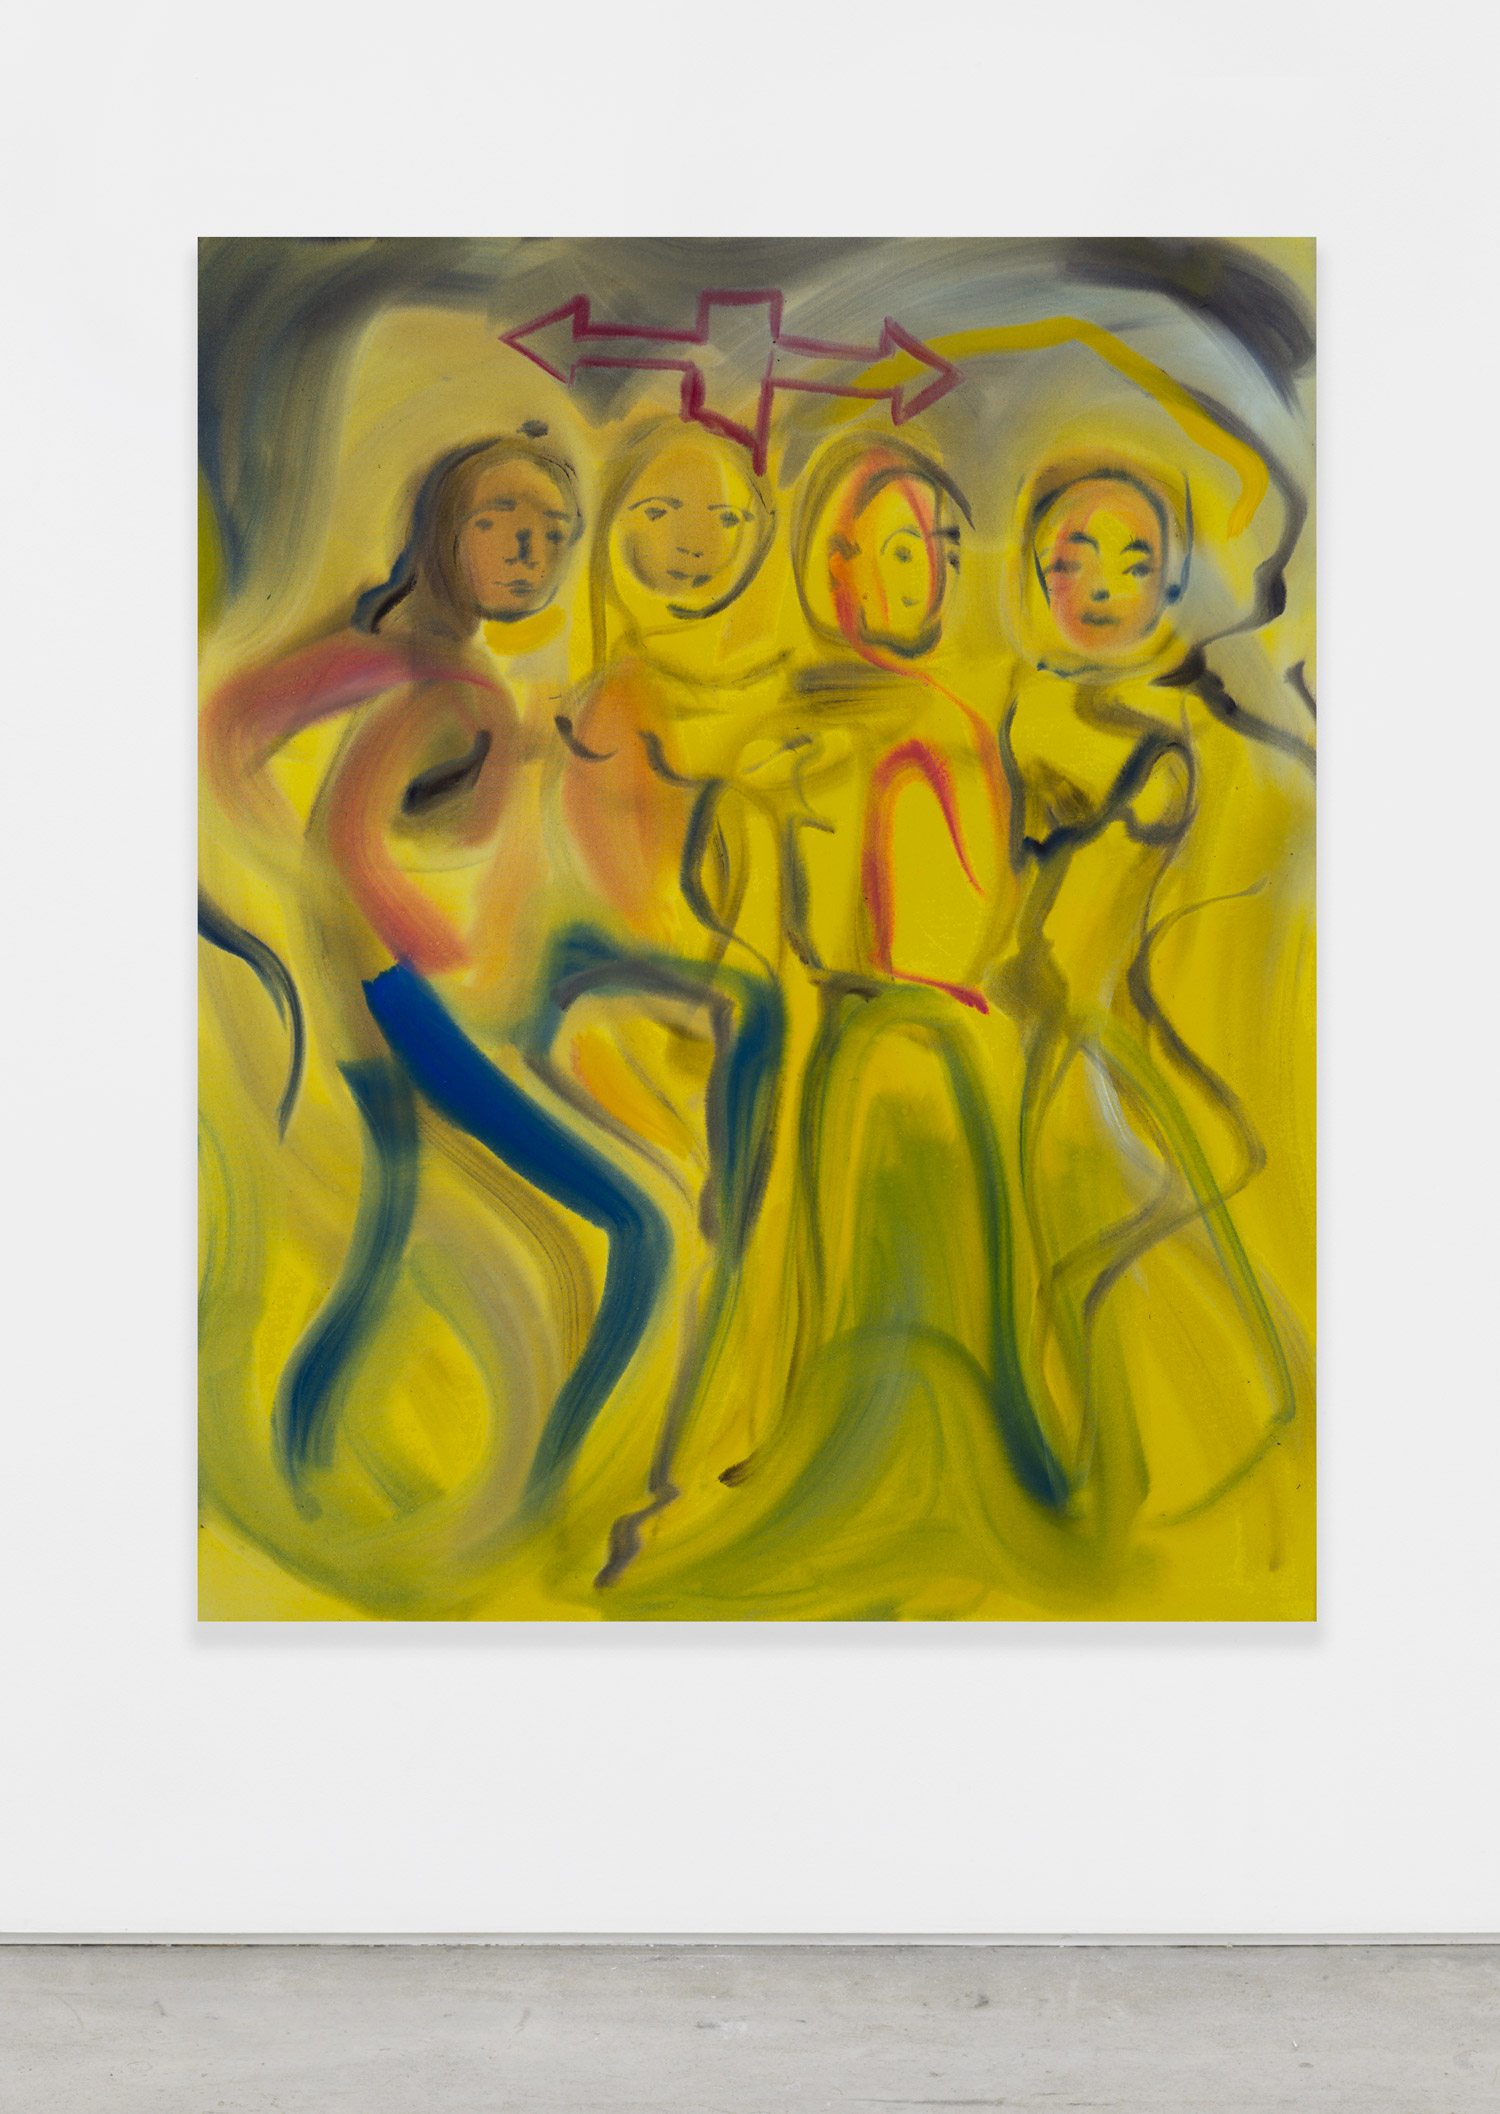 Sophie von Hellermann, Pilgrims, 2018, acrylic on canvas, 62.99h x 51.18w in.